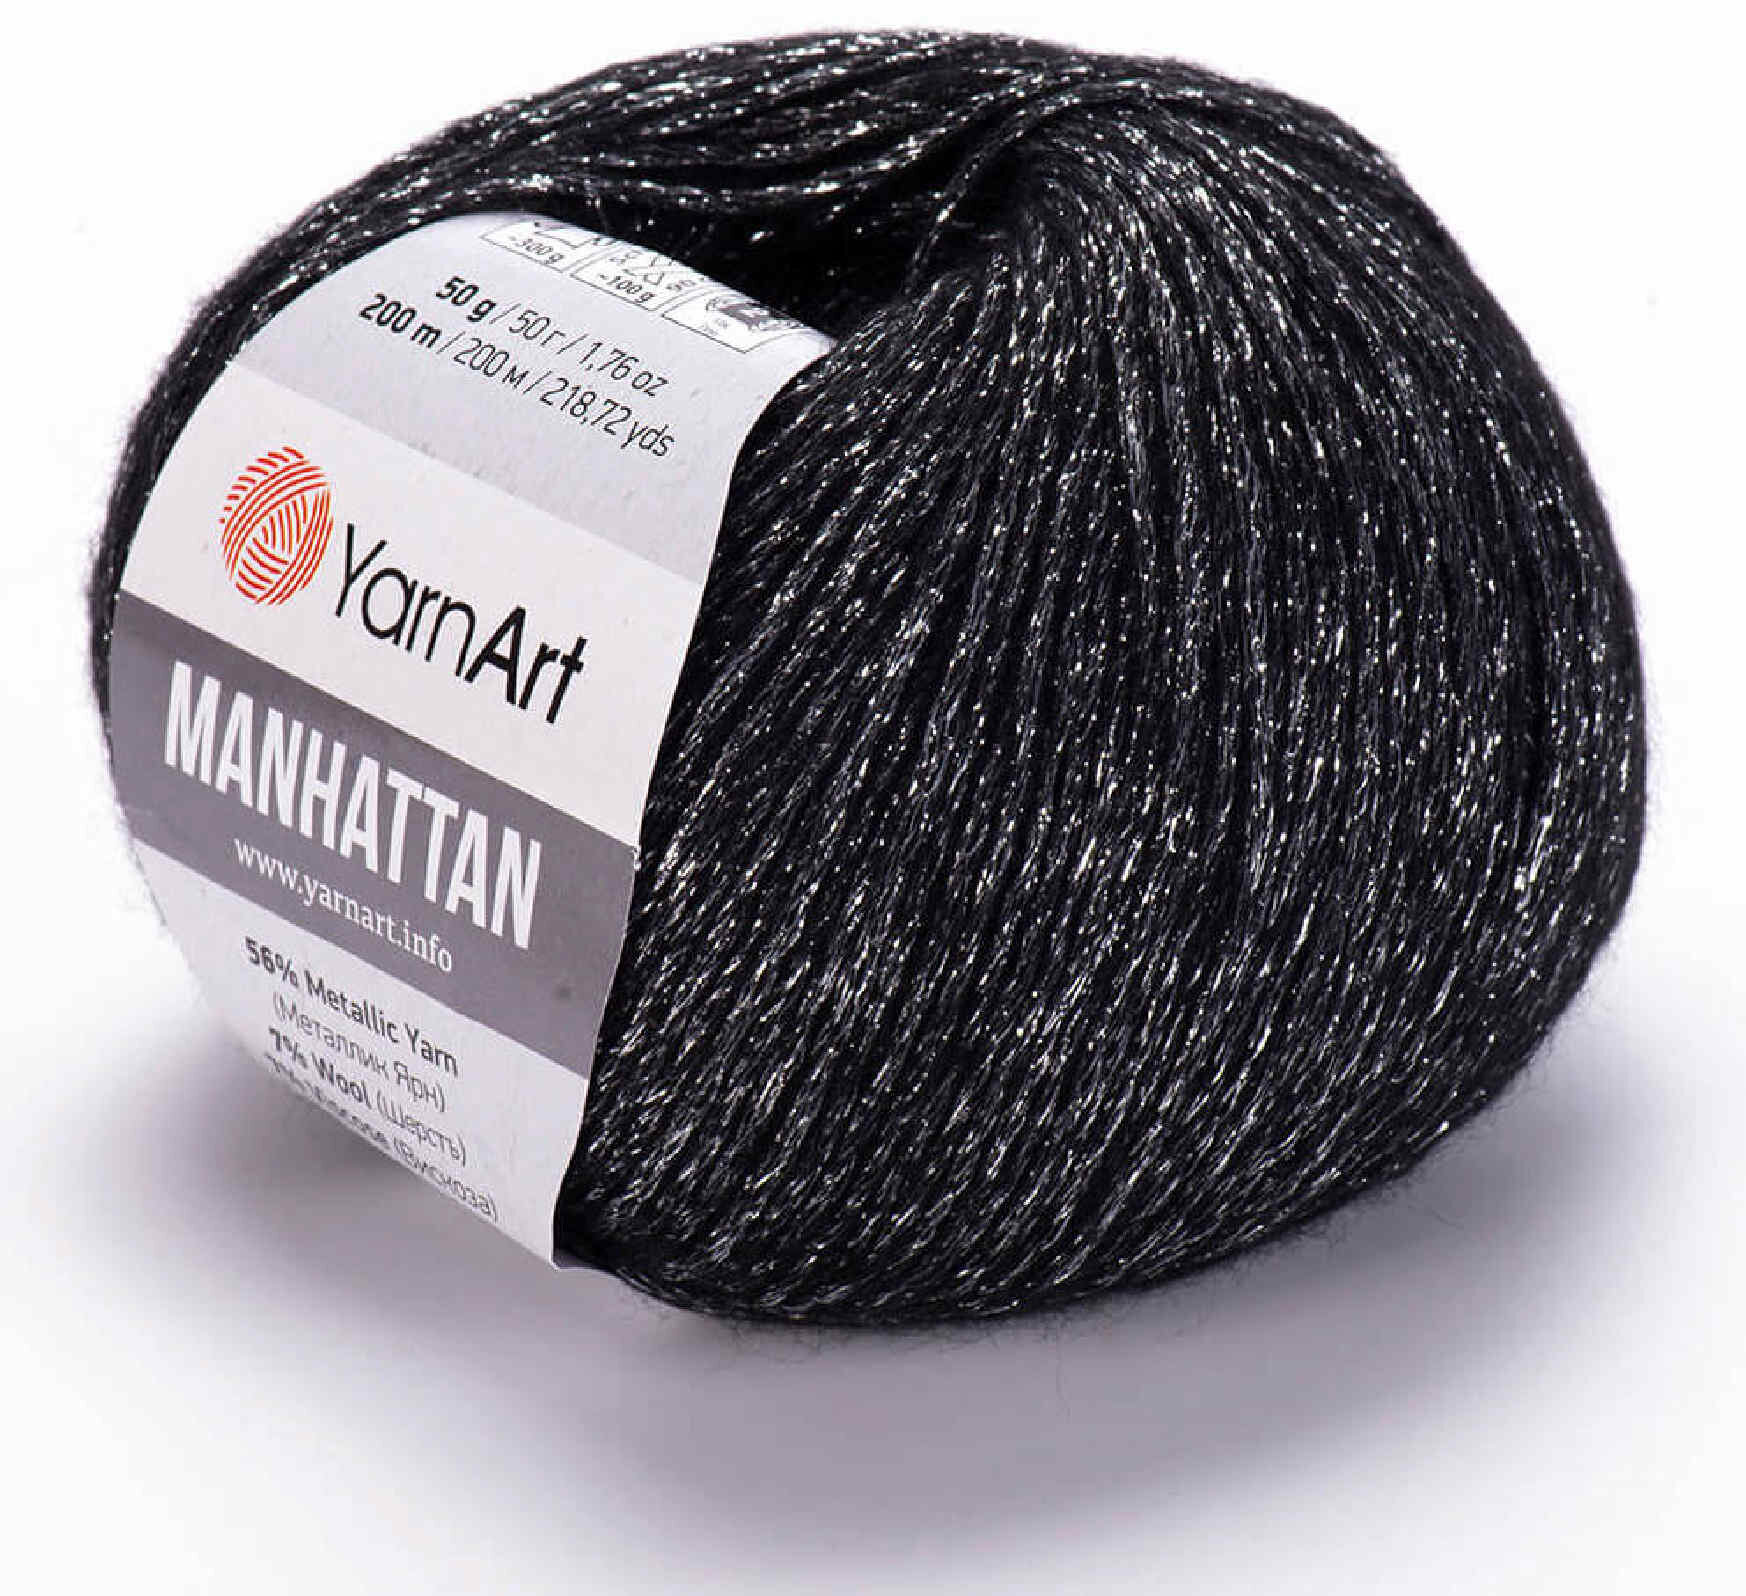 Пряжа Yarnart Manhattan серебро (910) 7%шерсть/7%вискоза/30%акрил/56%металлик 200м 50г 5шт